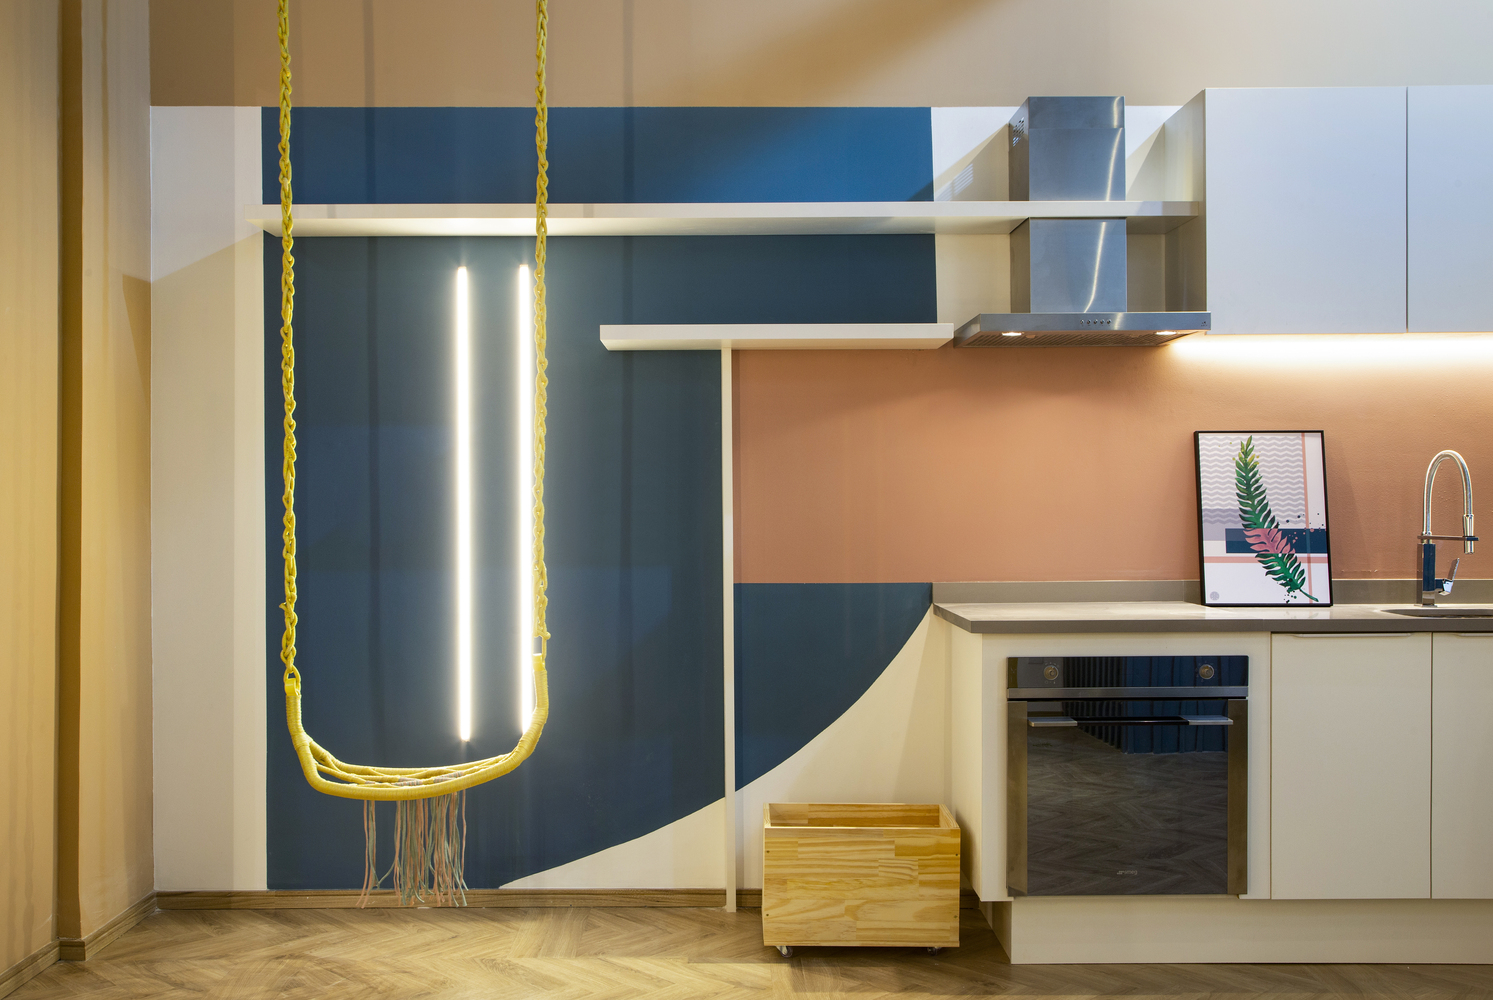 Phòng bếp thiết kế kiểu chữ I - giải pháp hoàn hảo cho căn hộ nhỏ vì tiết kiệm diện tích sàn, tối ưu hóa chiều cao trần và tạo lối đi thông thoáng. Backsplash hồng phấn cùng chiếc võng treo màu vàng tươi nổi bật trên phông nền trắng - xanh lam đậm.